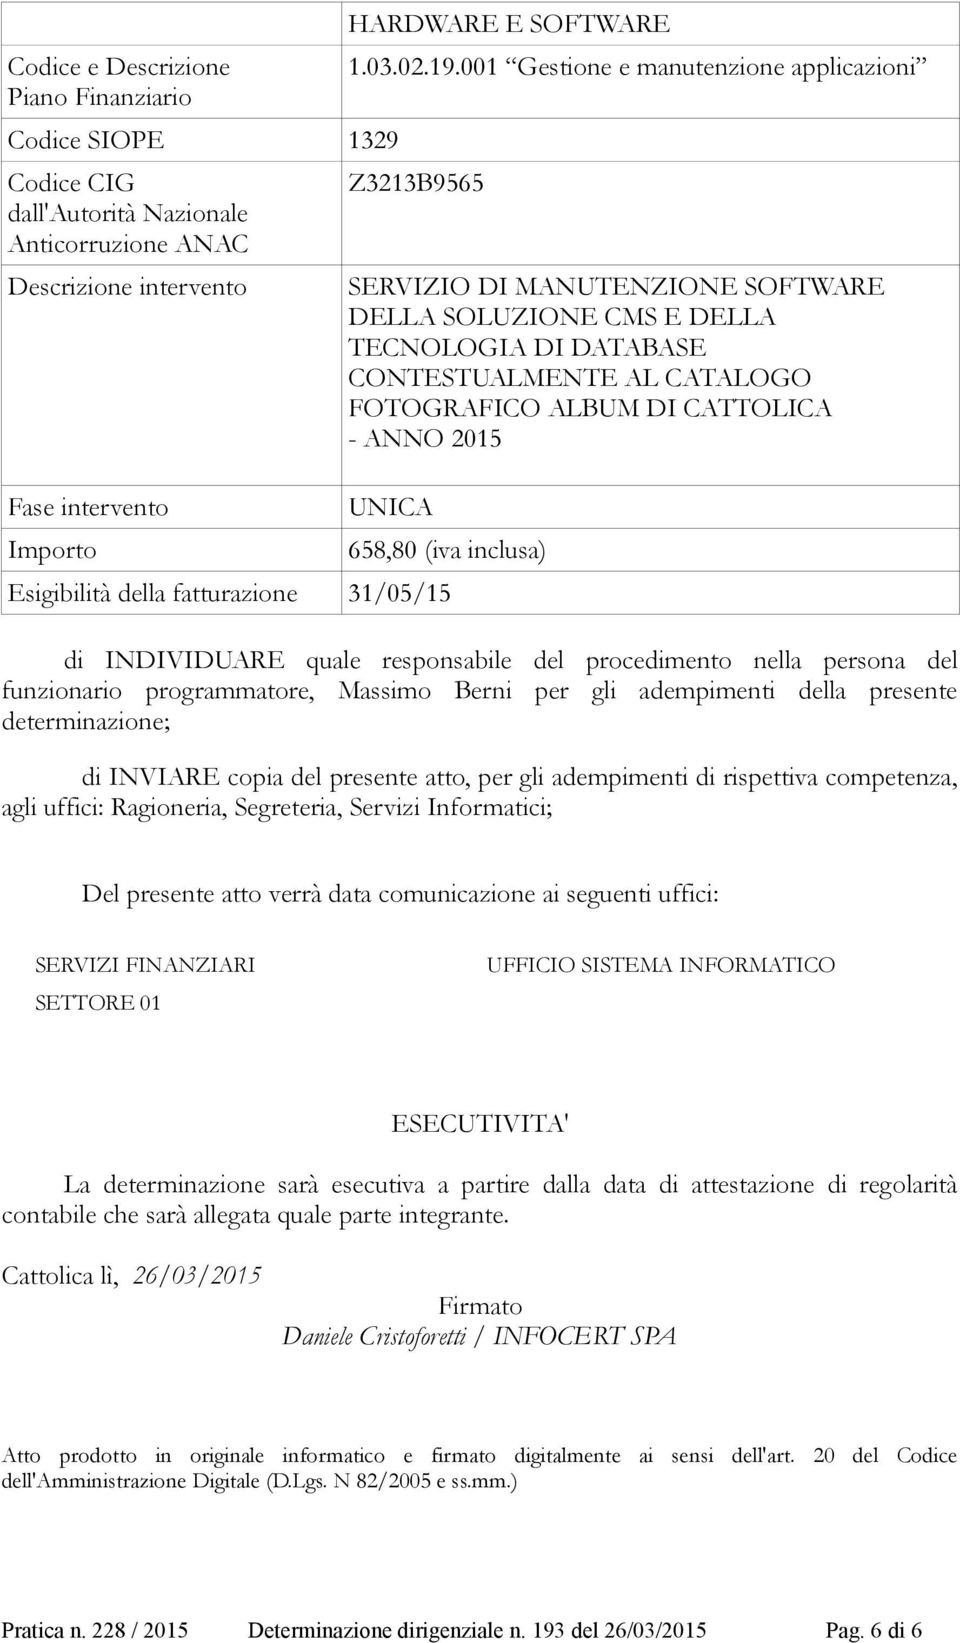 ANNO 2015 UNICA 658,80 (iva inclusa) Esigibilità della fatturazione 31/05/15 di INDIVIDUARE quale responsabile del procedimento nella persona del funzionario programmatore, Massimo Berni per gli